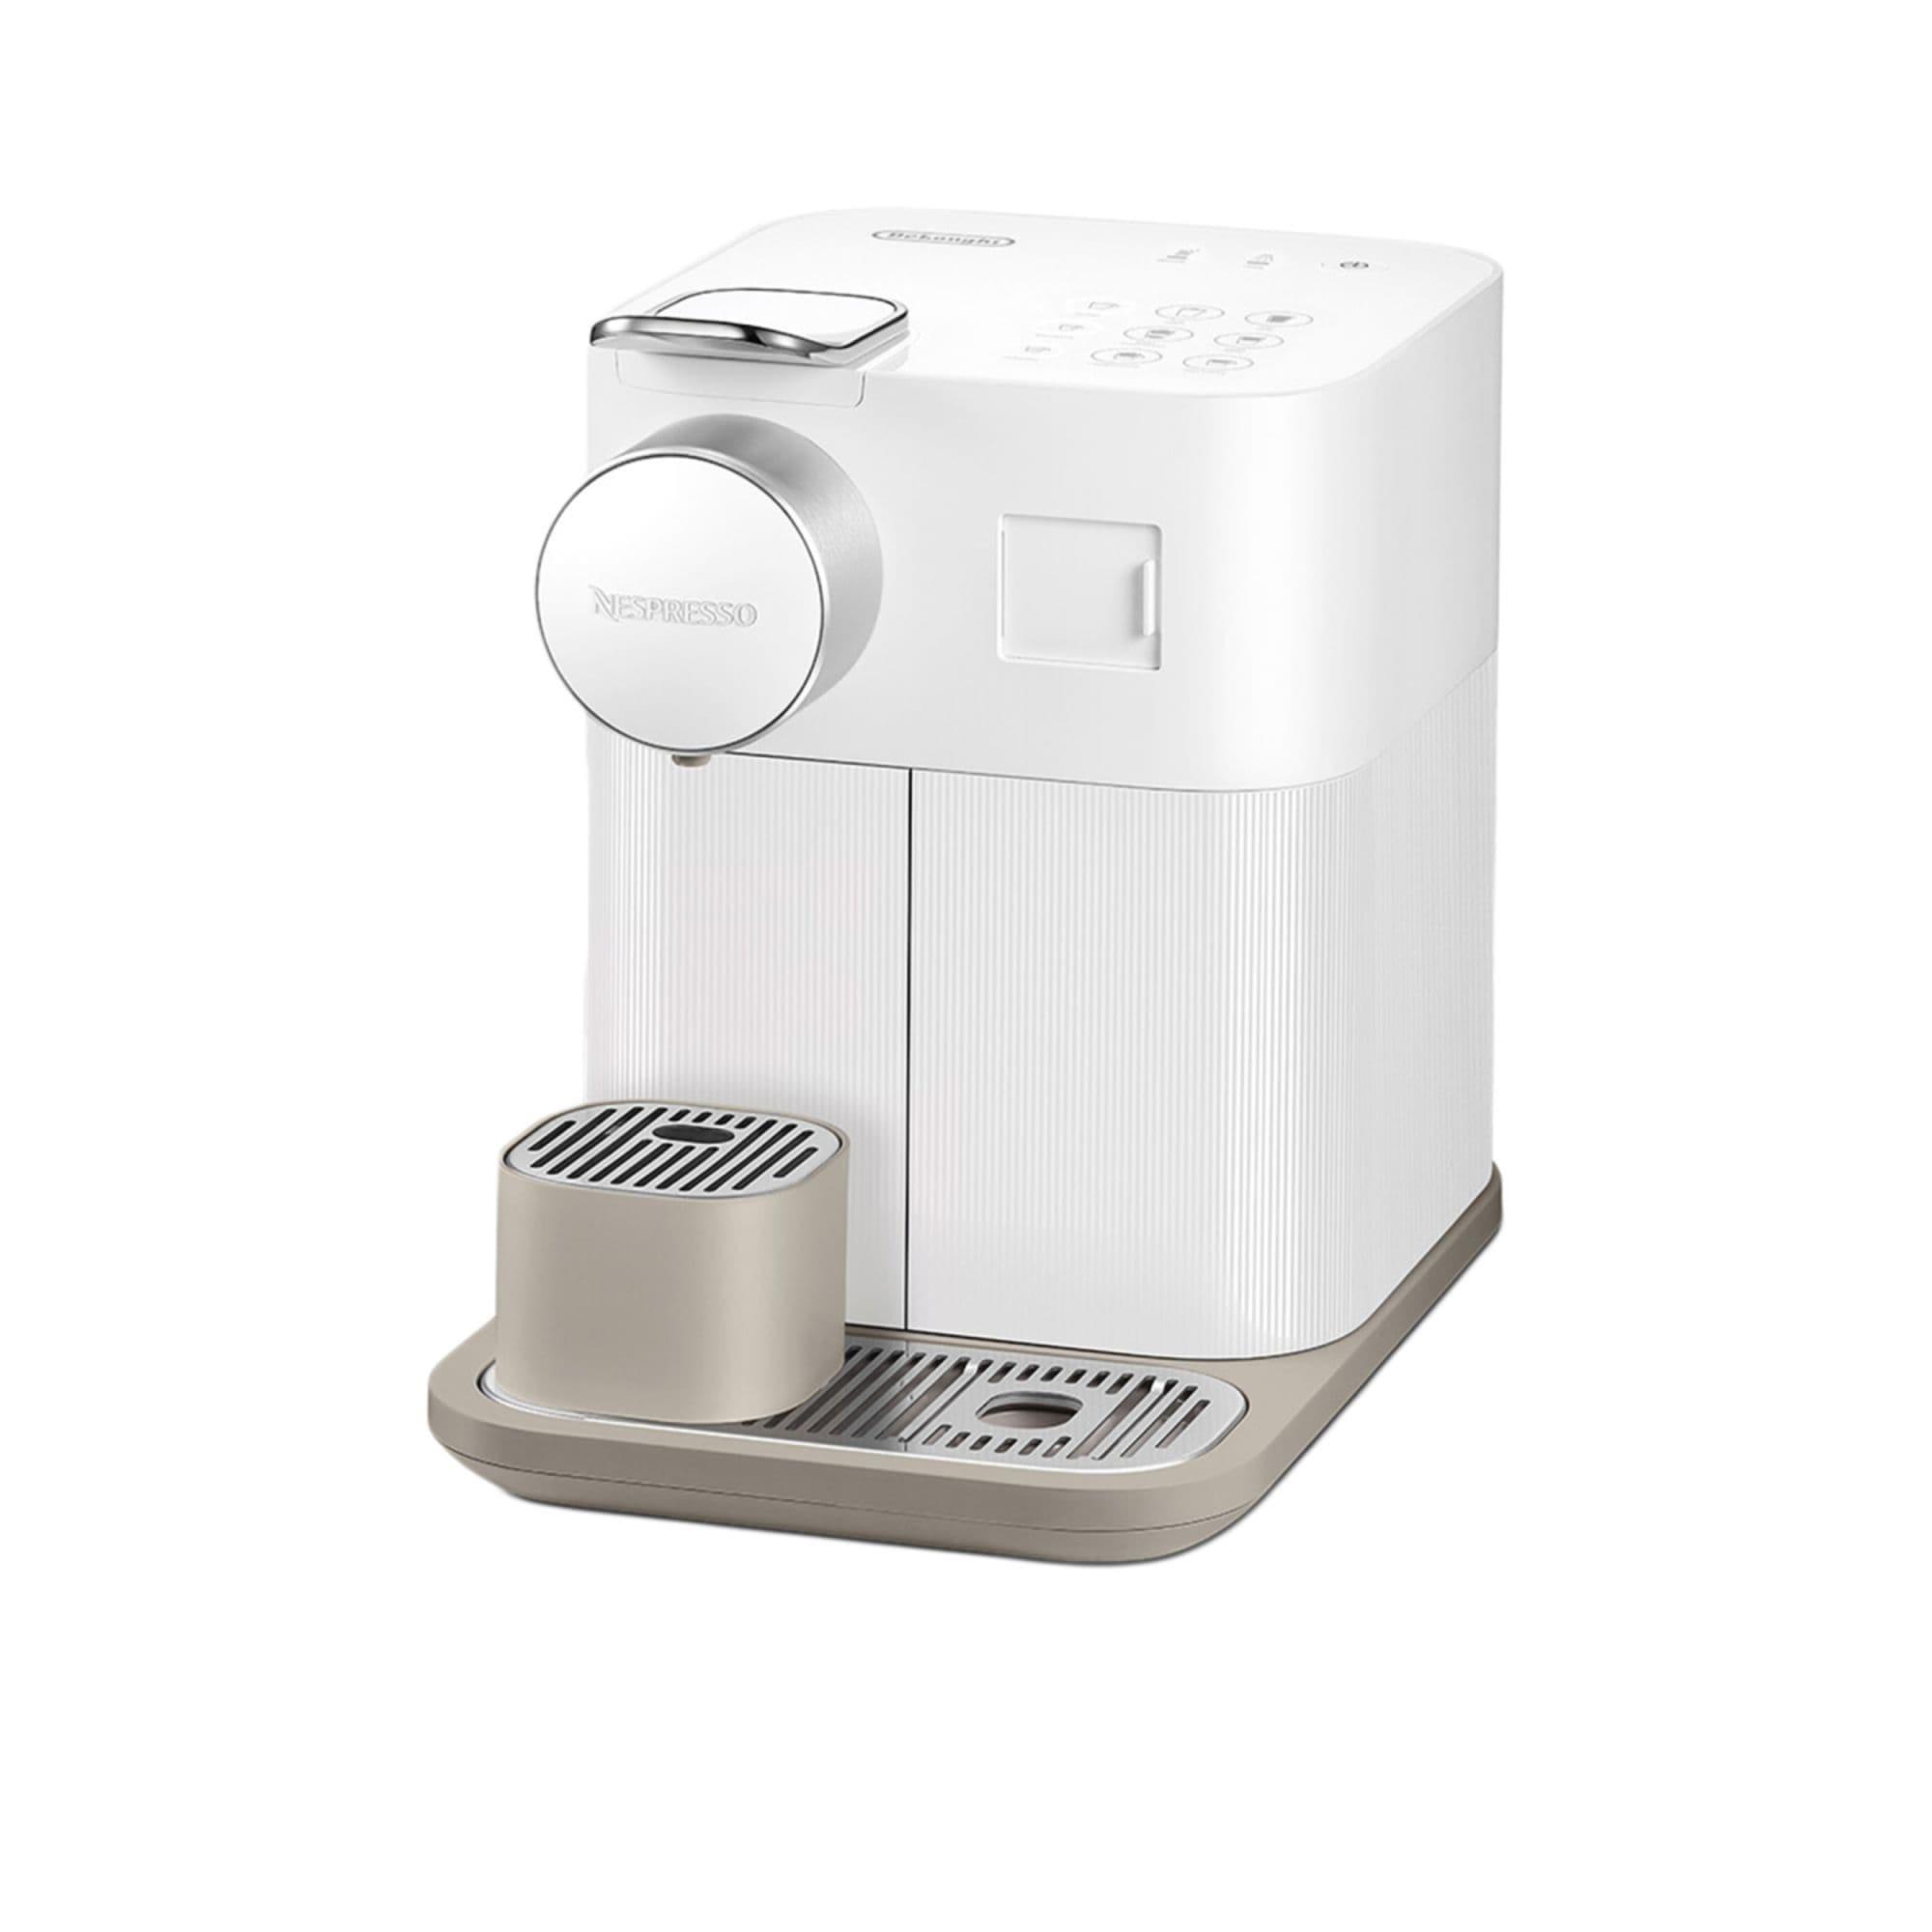 DeLonghi Nespresso Gran Lattisima EN640W Automatic Capsule Coffee Machine White Image 2